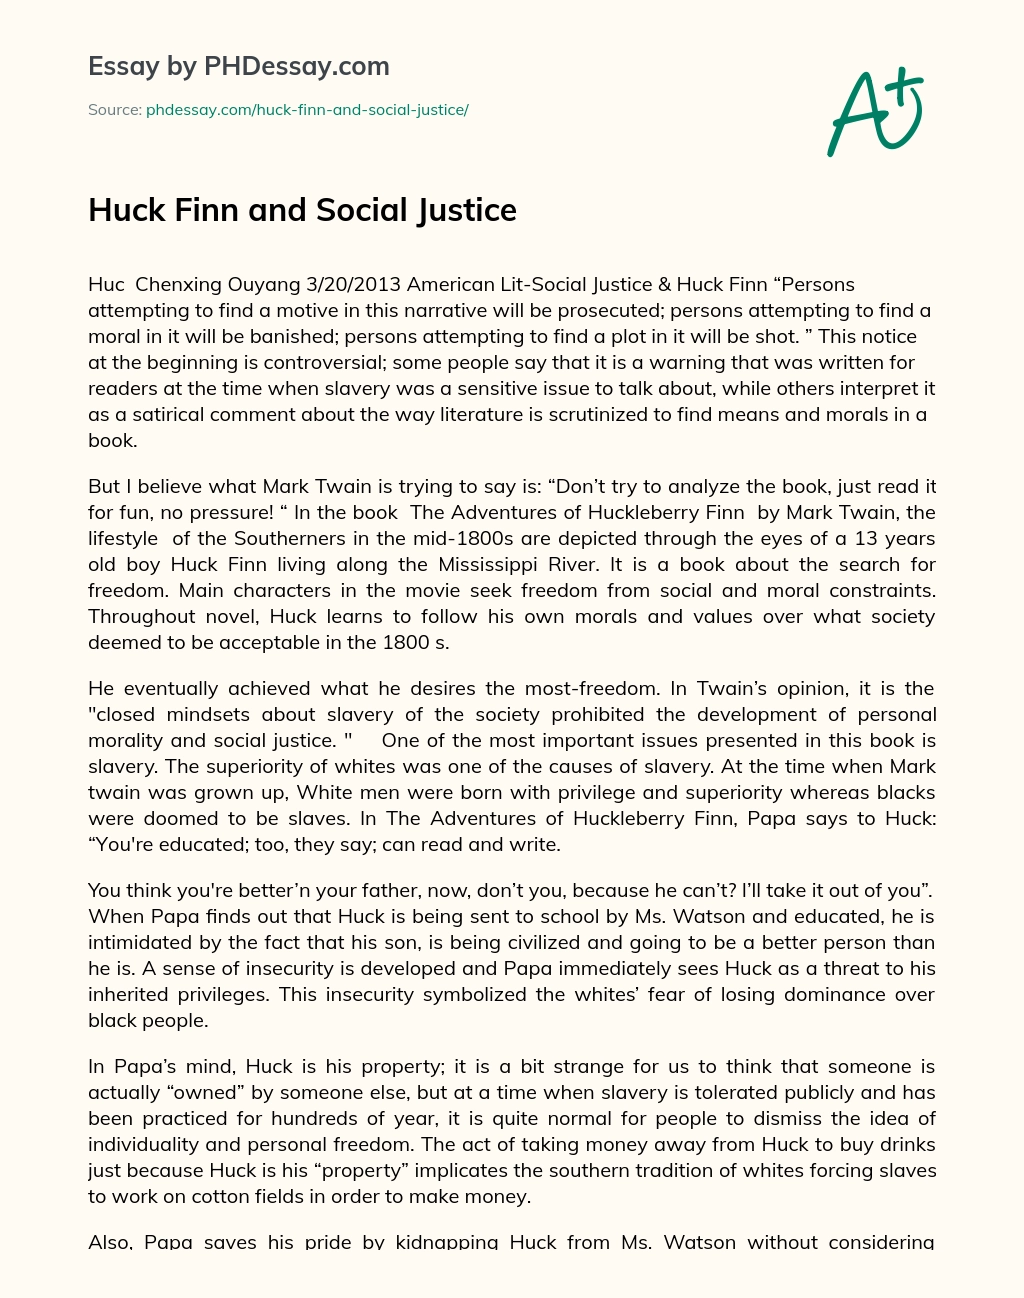 Huck Finn and Social Justice essay